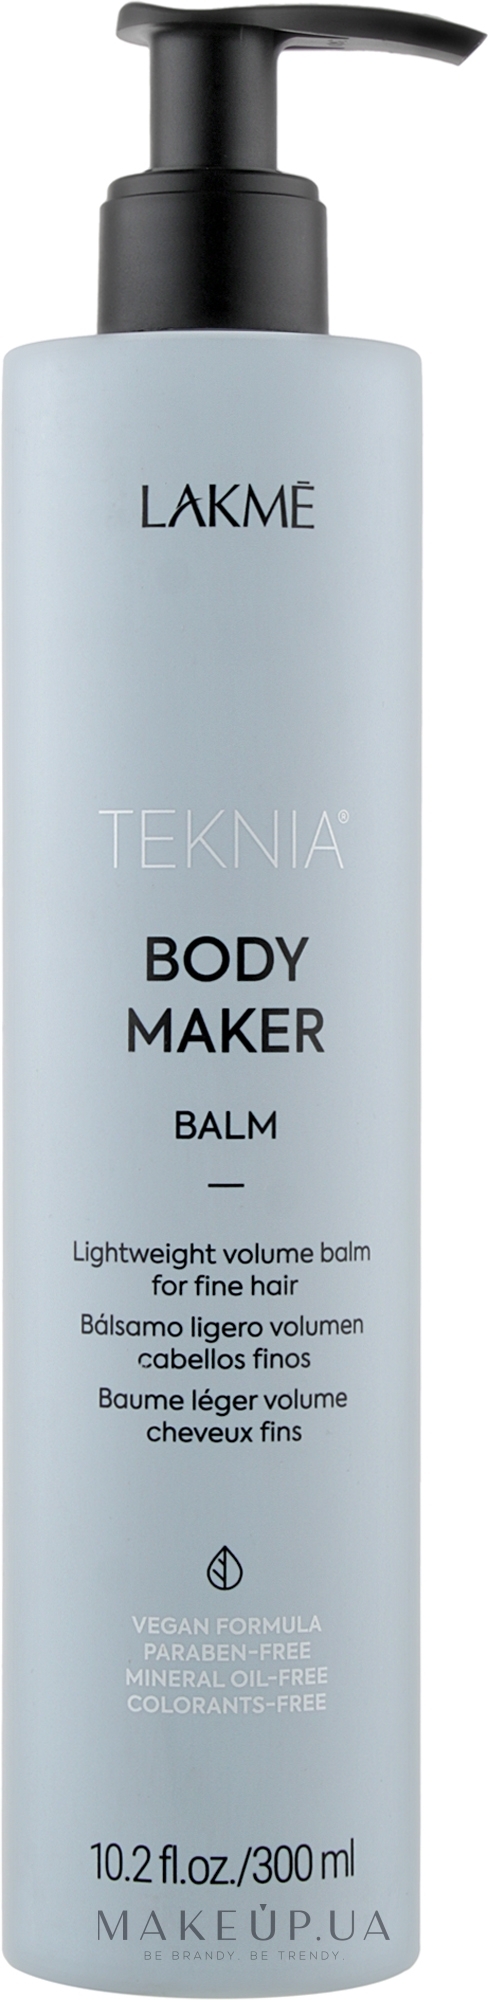 Бальзам для об'єму волосся - Lakme Teknia Body Maker Balm — фото 300ml